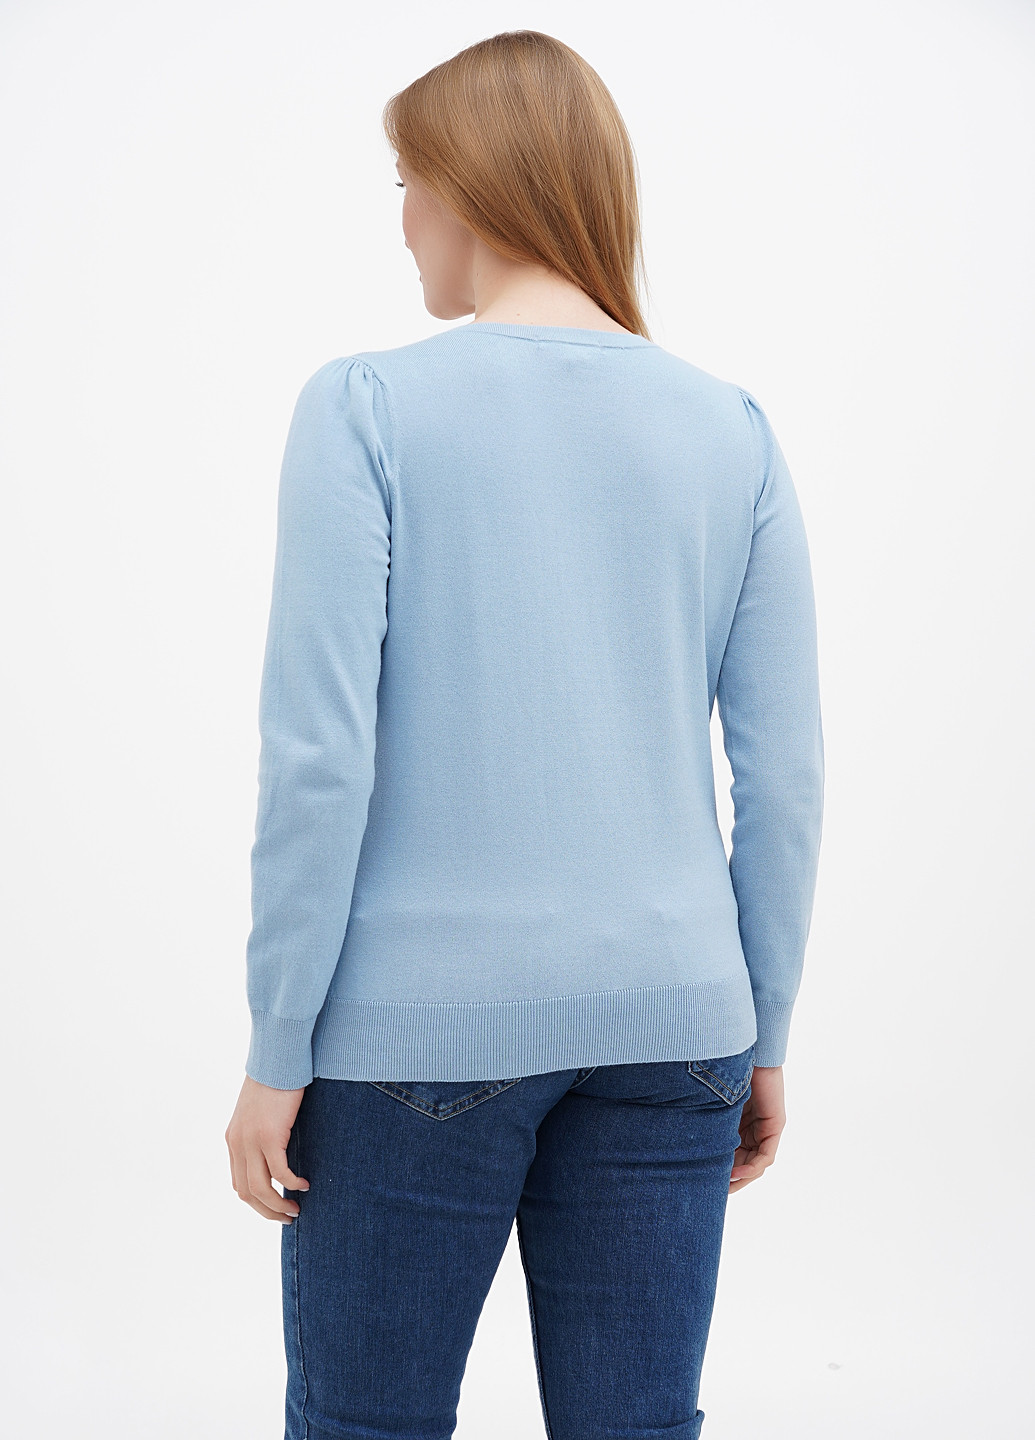 Голубой демисезонный пуловер пуловер Boden